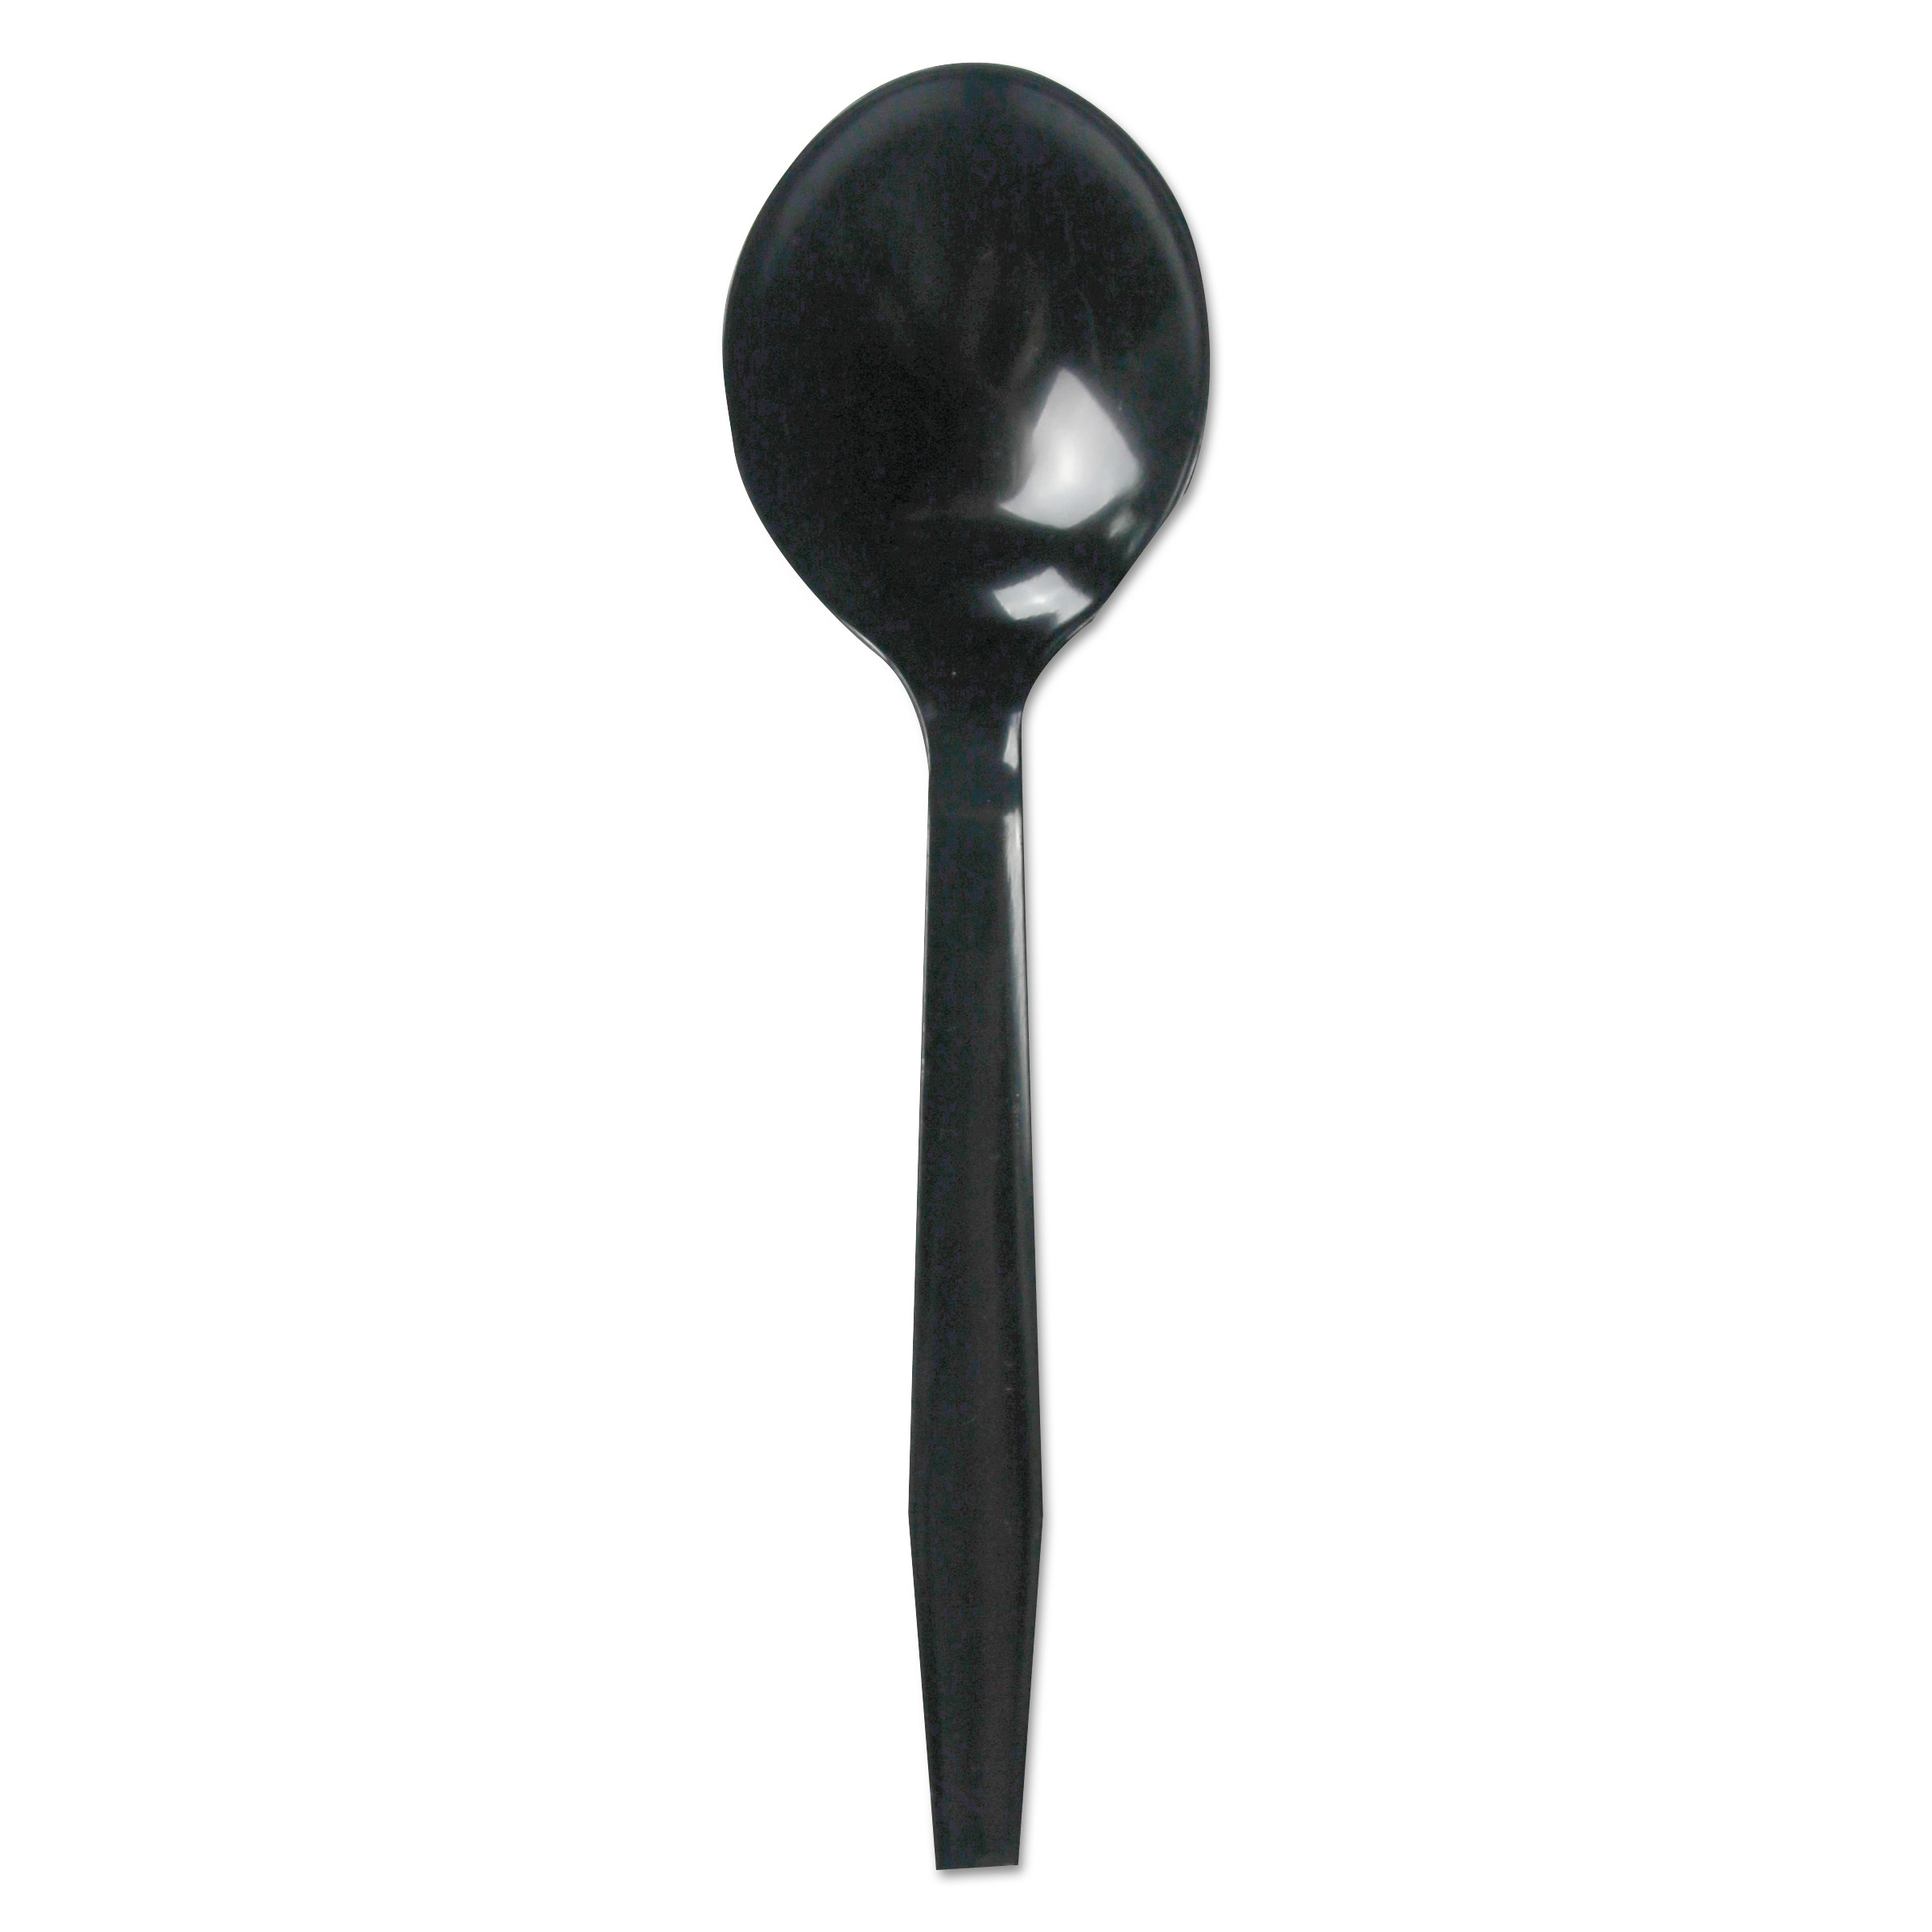  Boardwalk BWKSOUPMWPSBLA Mediumweight Polystyrene Cutlery, Soup Spoon, Black, 1000/Carton (BWKSOUPMWPSBLA) 